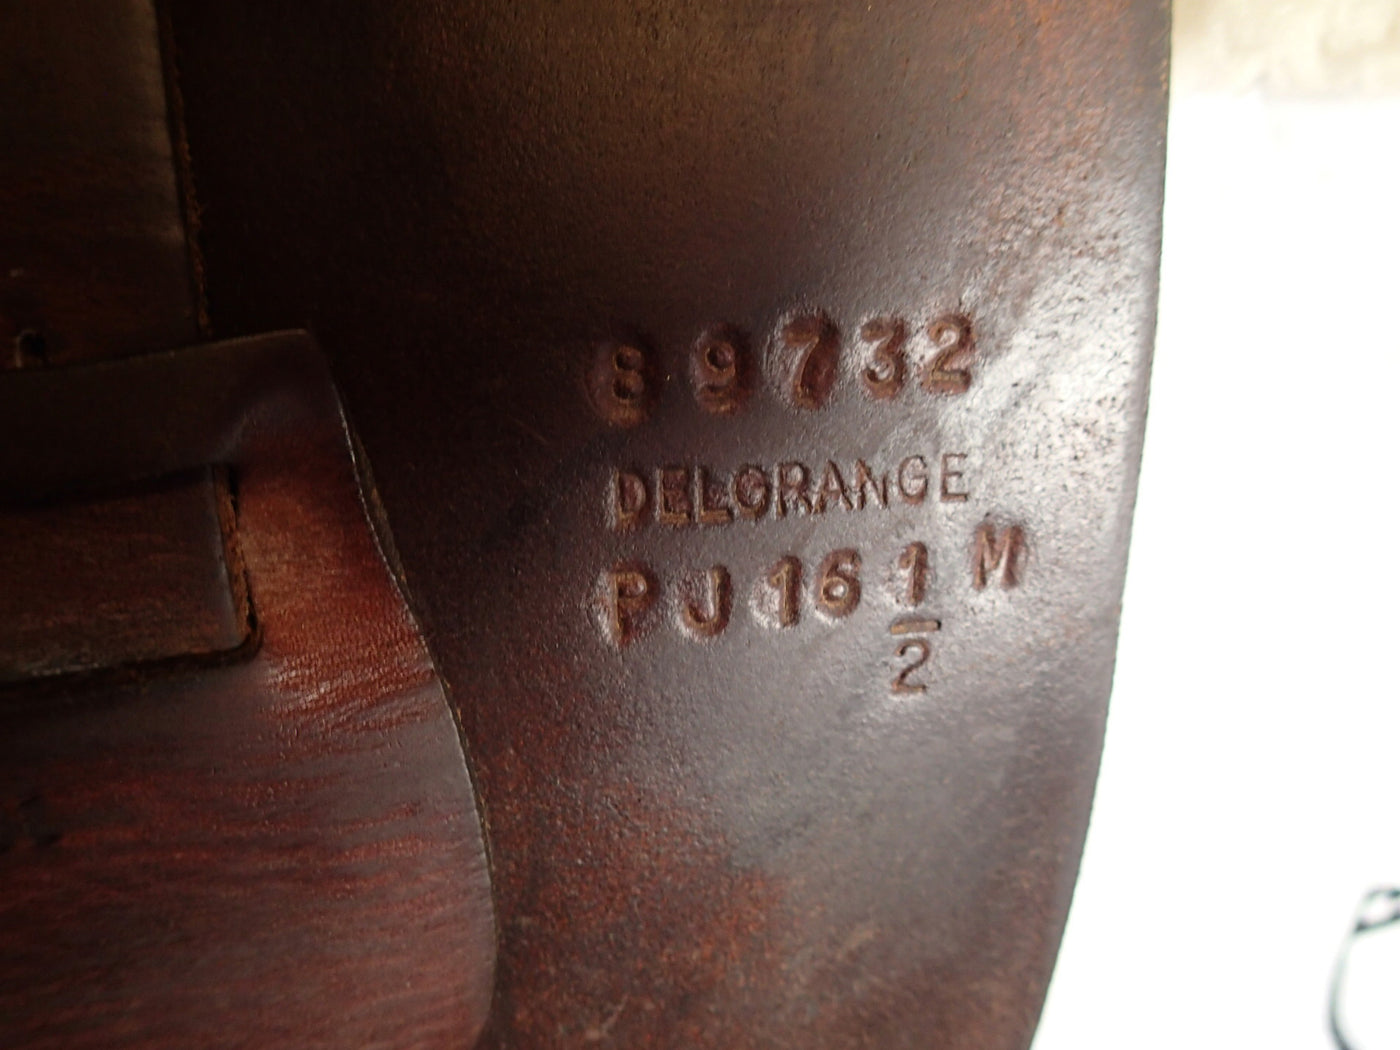 16.5" Bruno Delgrange PJ Saddle - 1989 - 4" dot to dot